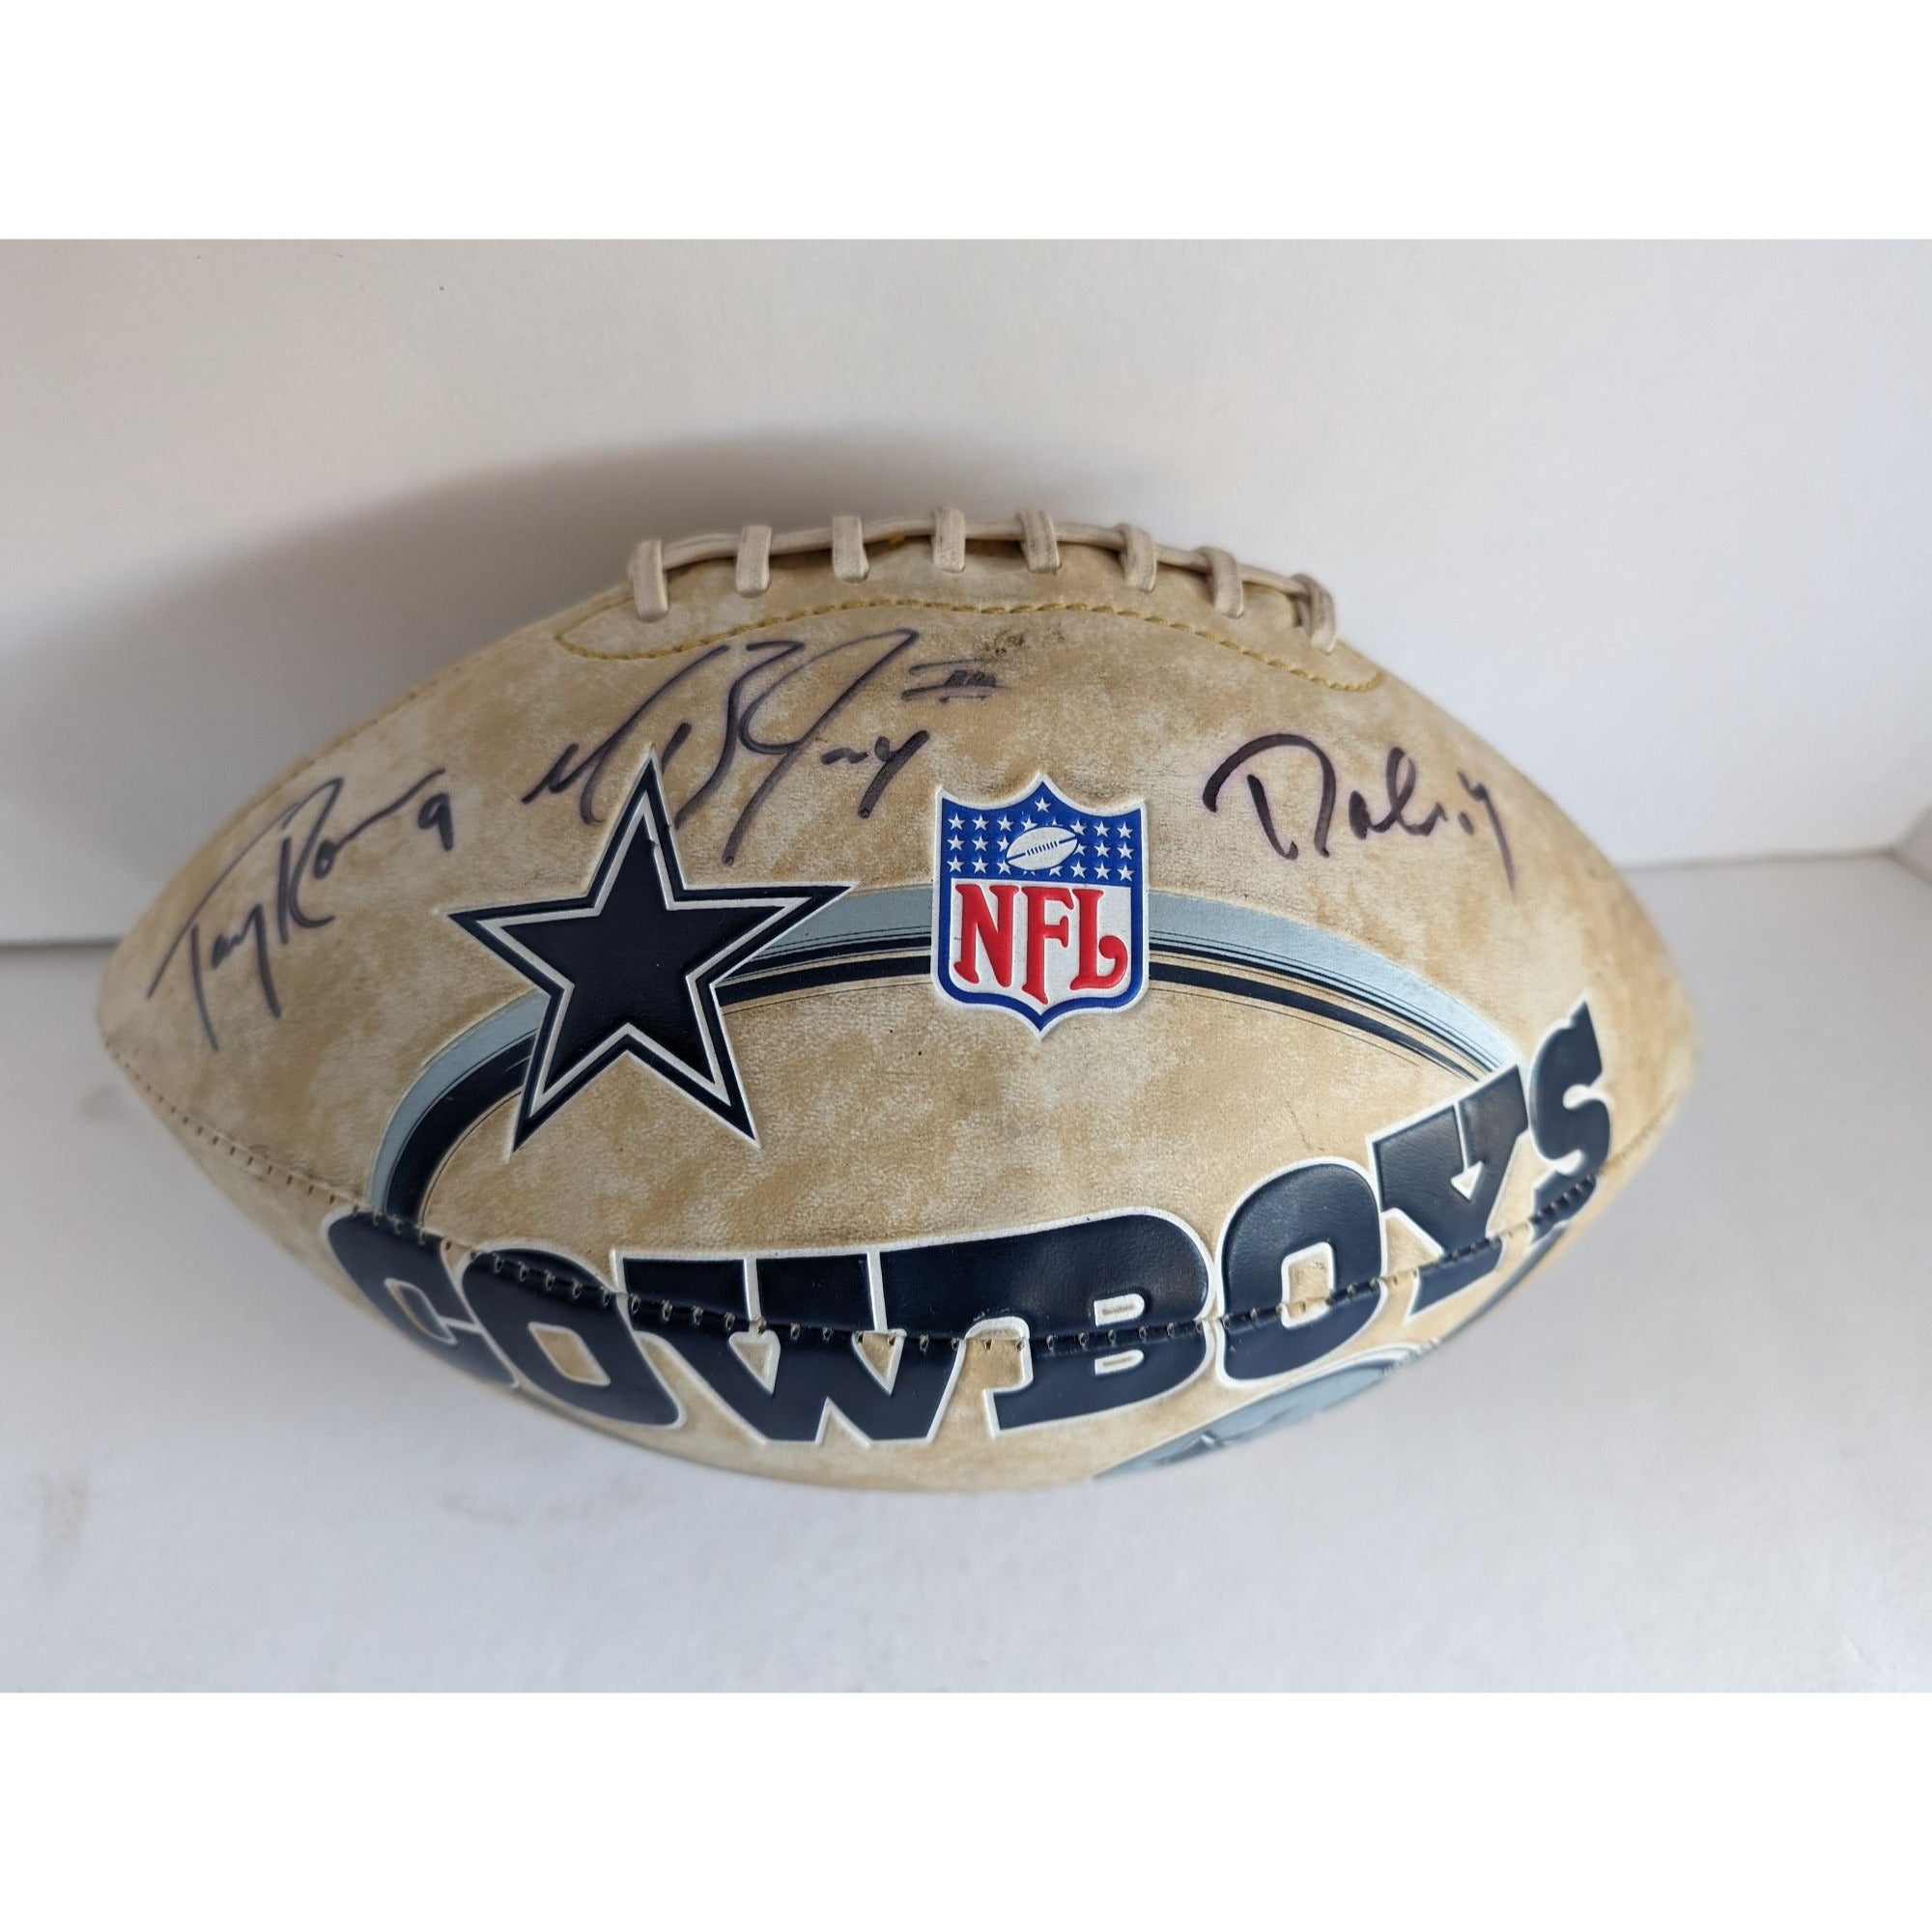 Tony Romo Terrell Owens Jason Witten Dallas Cowboys full size football signed